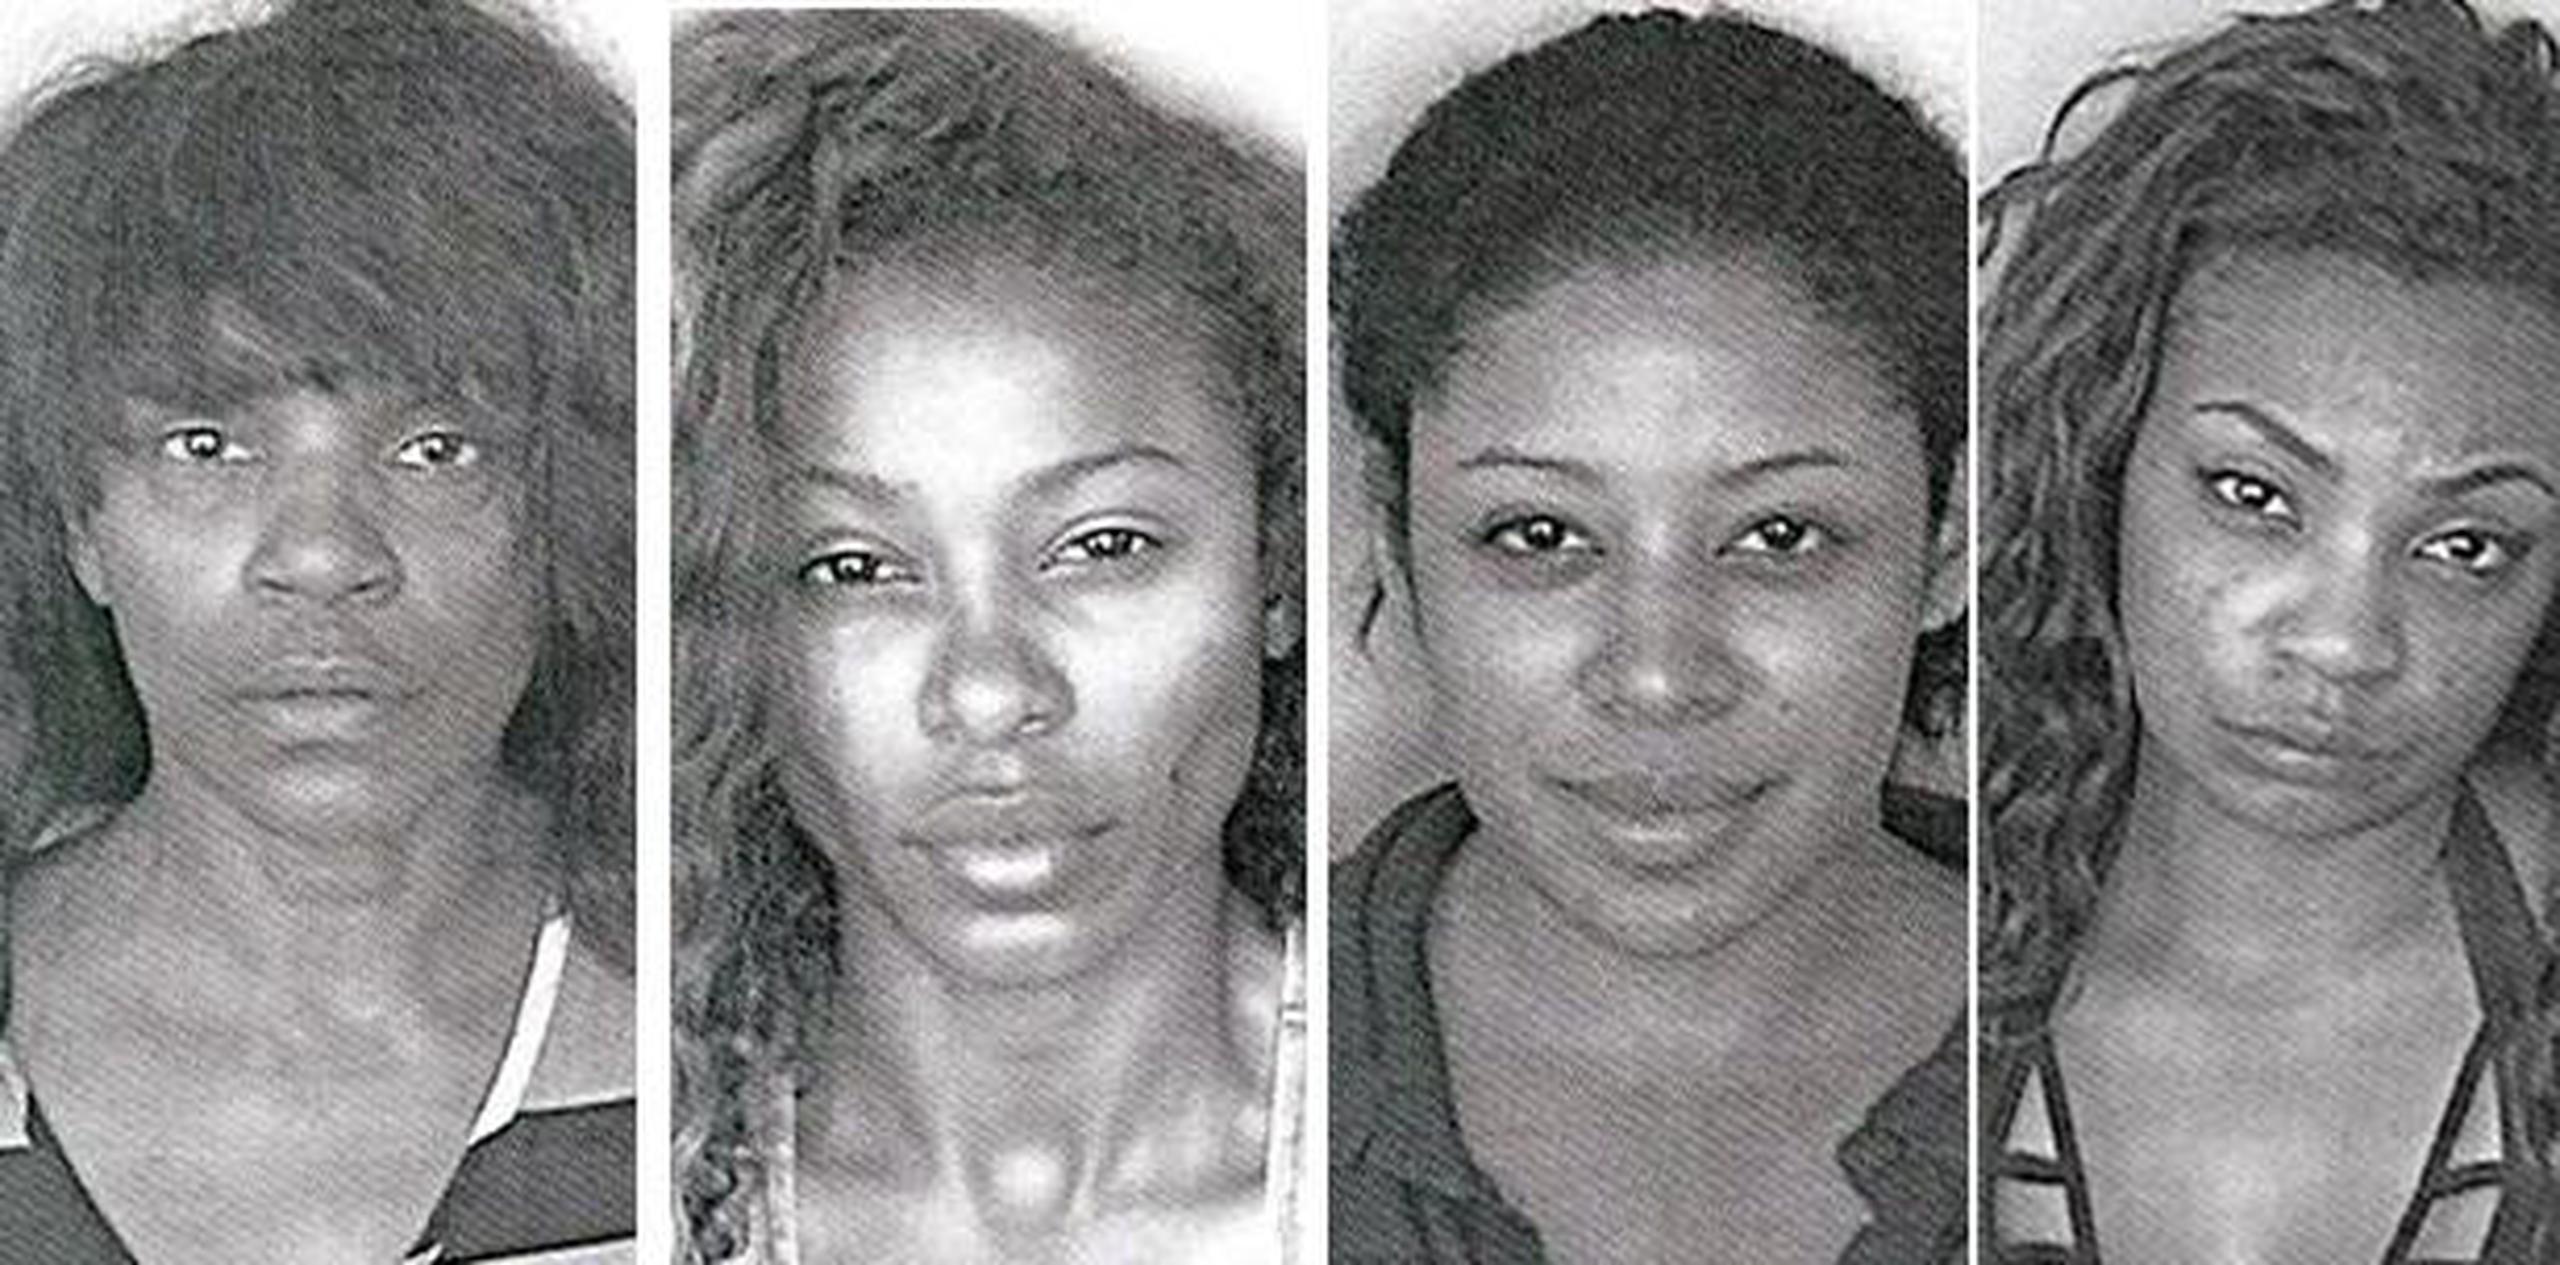 Las cuatro mujeres fueron arrestadas por una trifulca en el Aeropuerto Internacional Luis Muñoz Marín el pasado 15 de mayo. (Archivo)